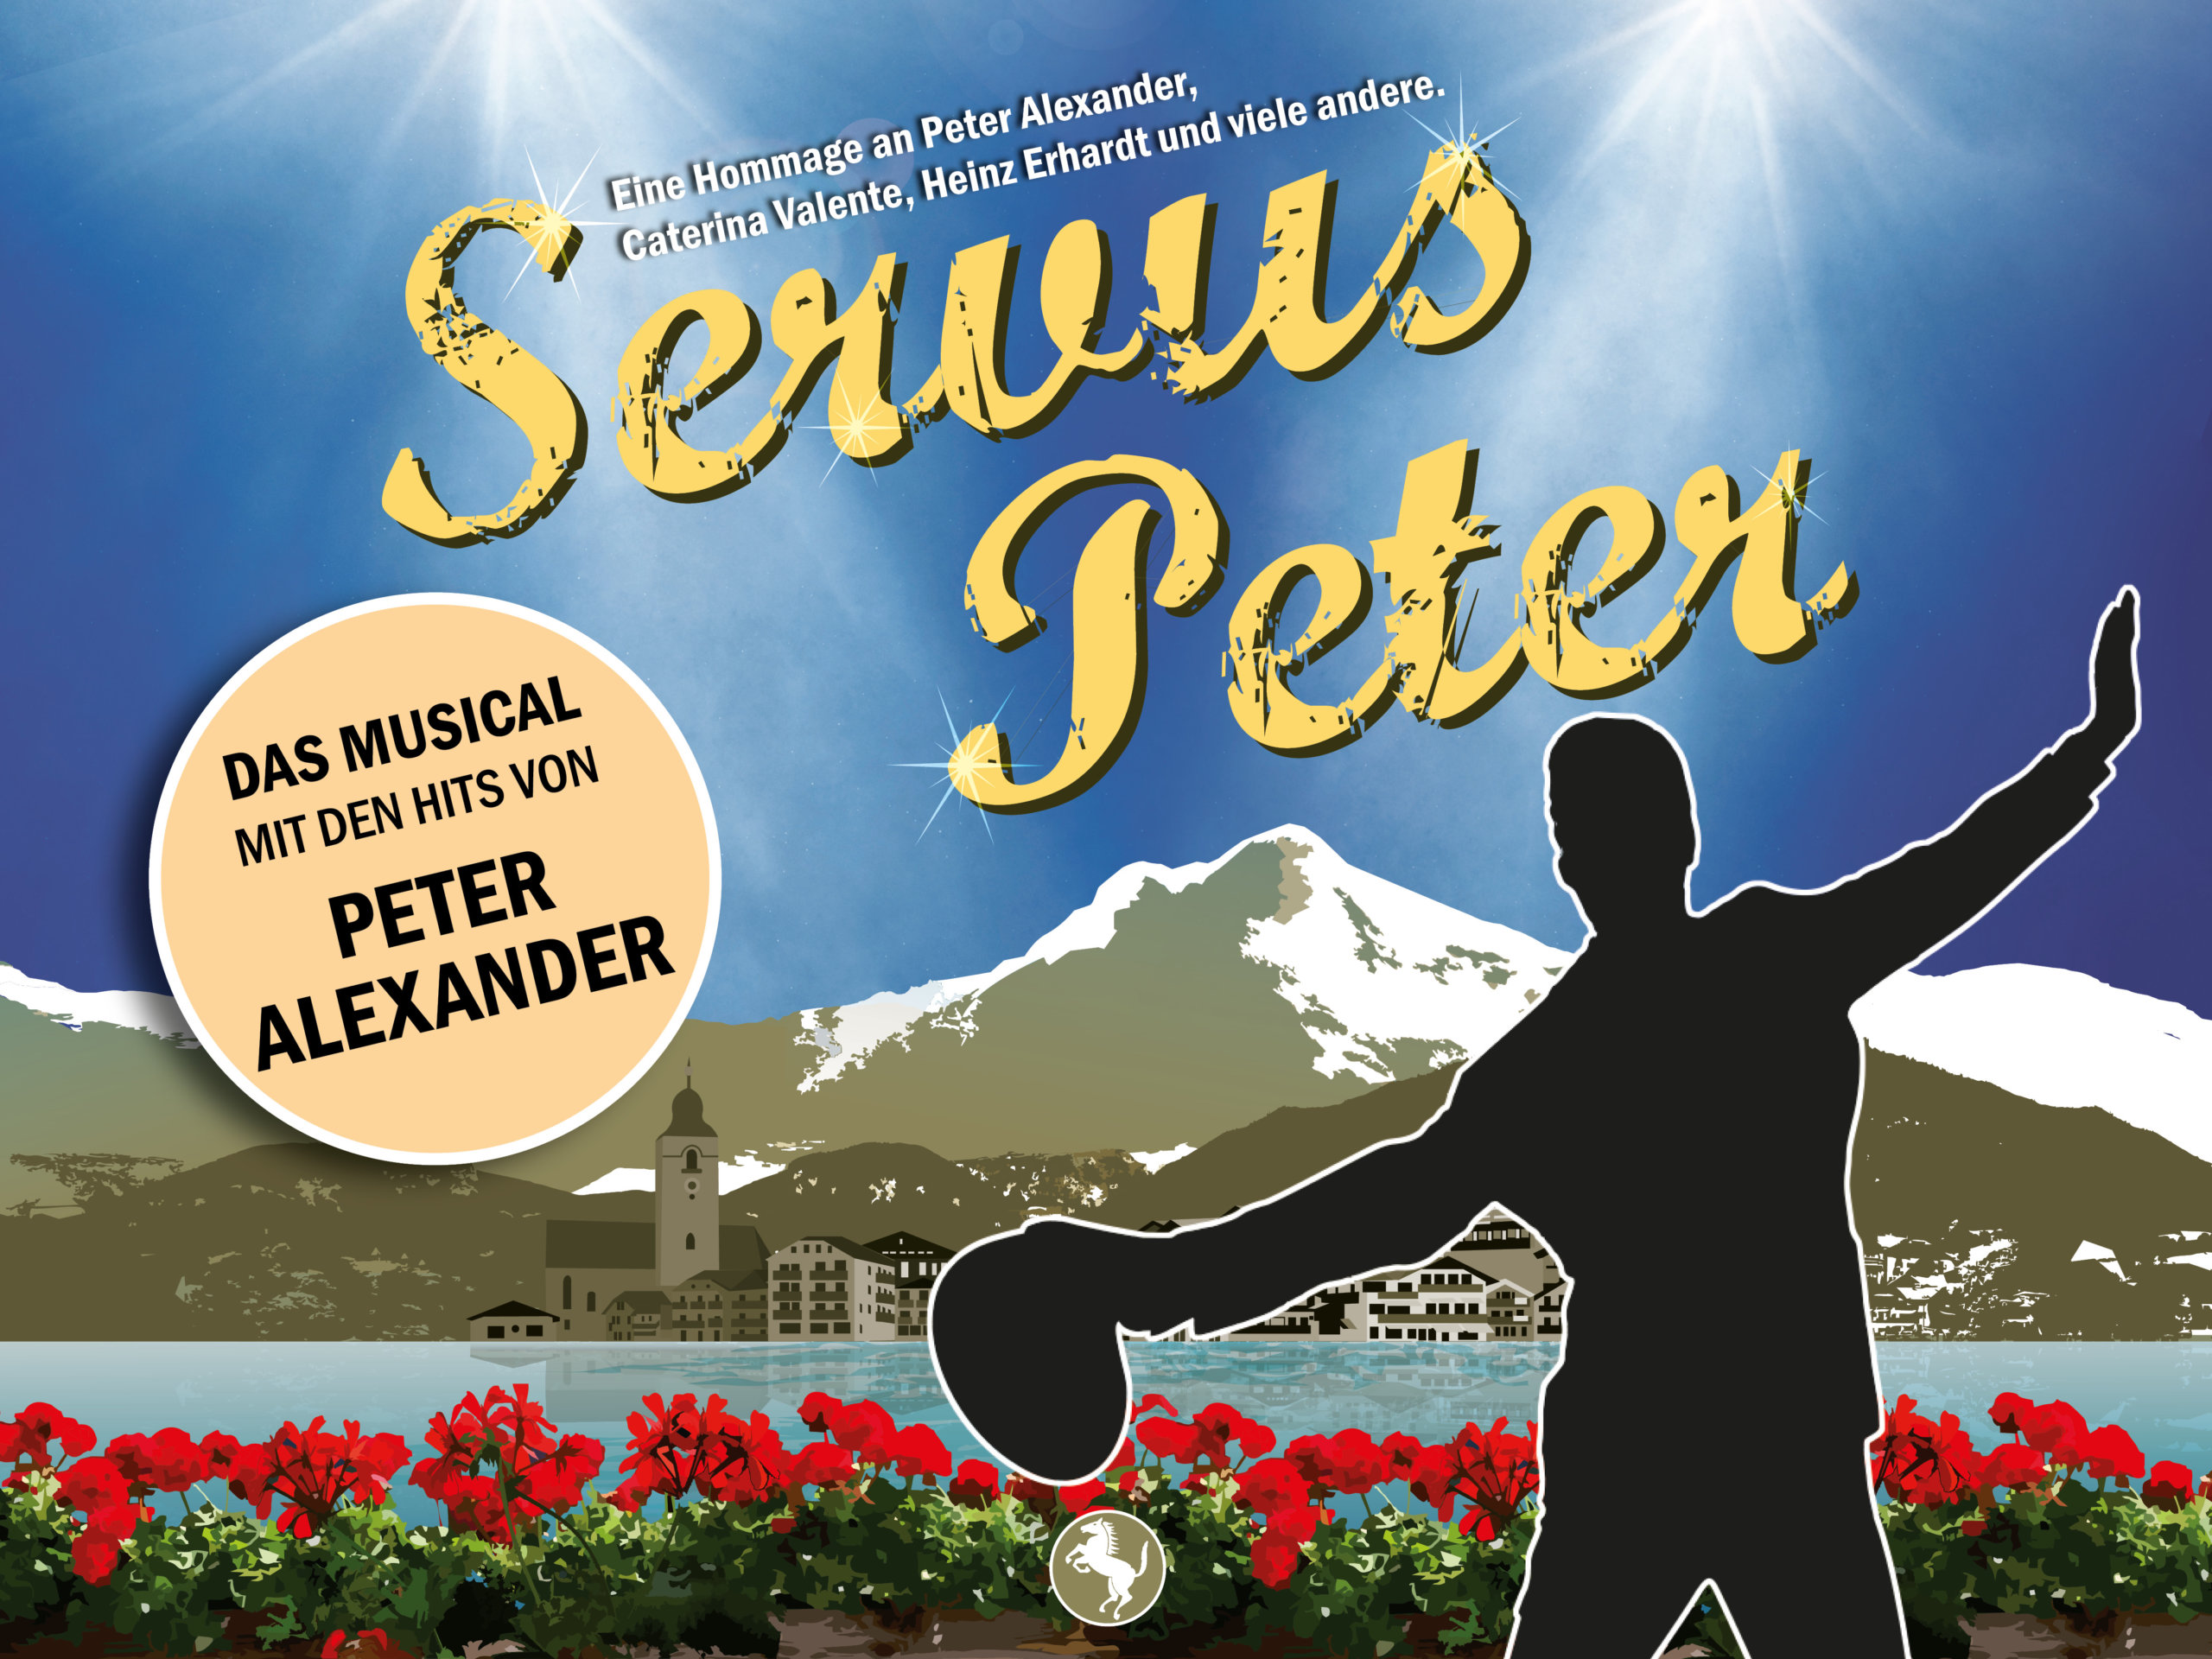 Musical: Servus Peter – Eine Hommage an Peter Alexander